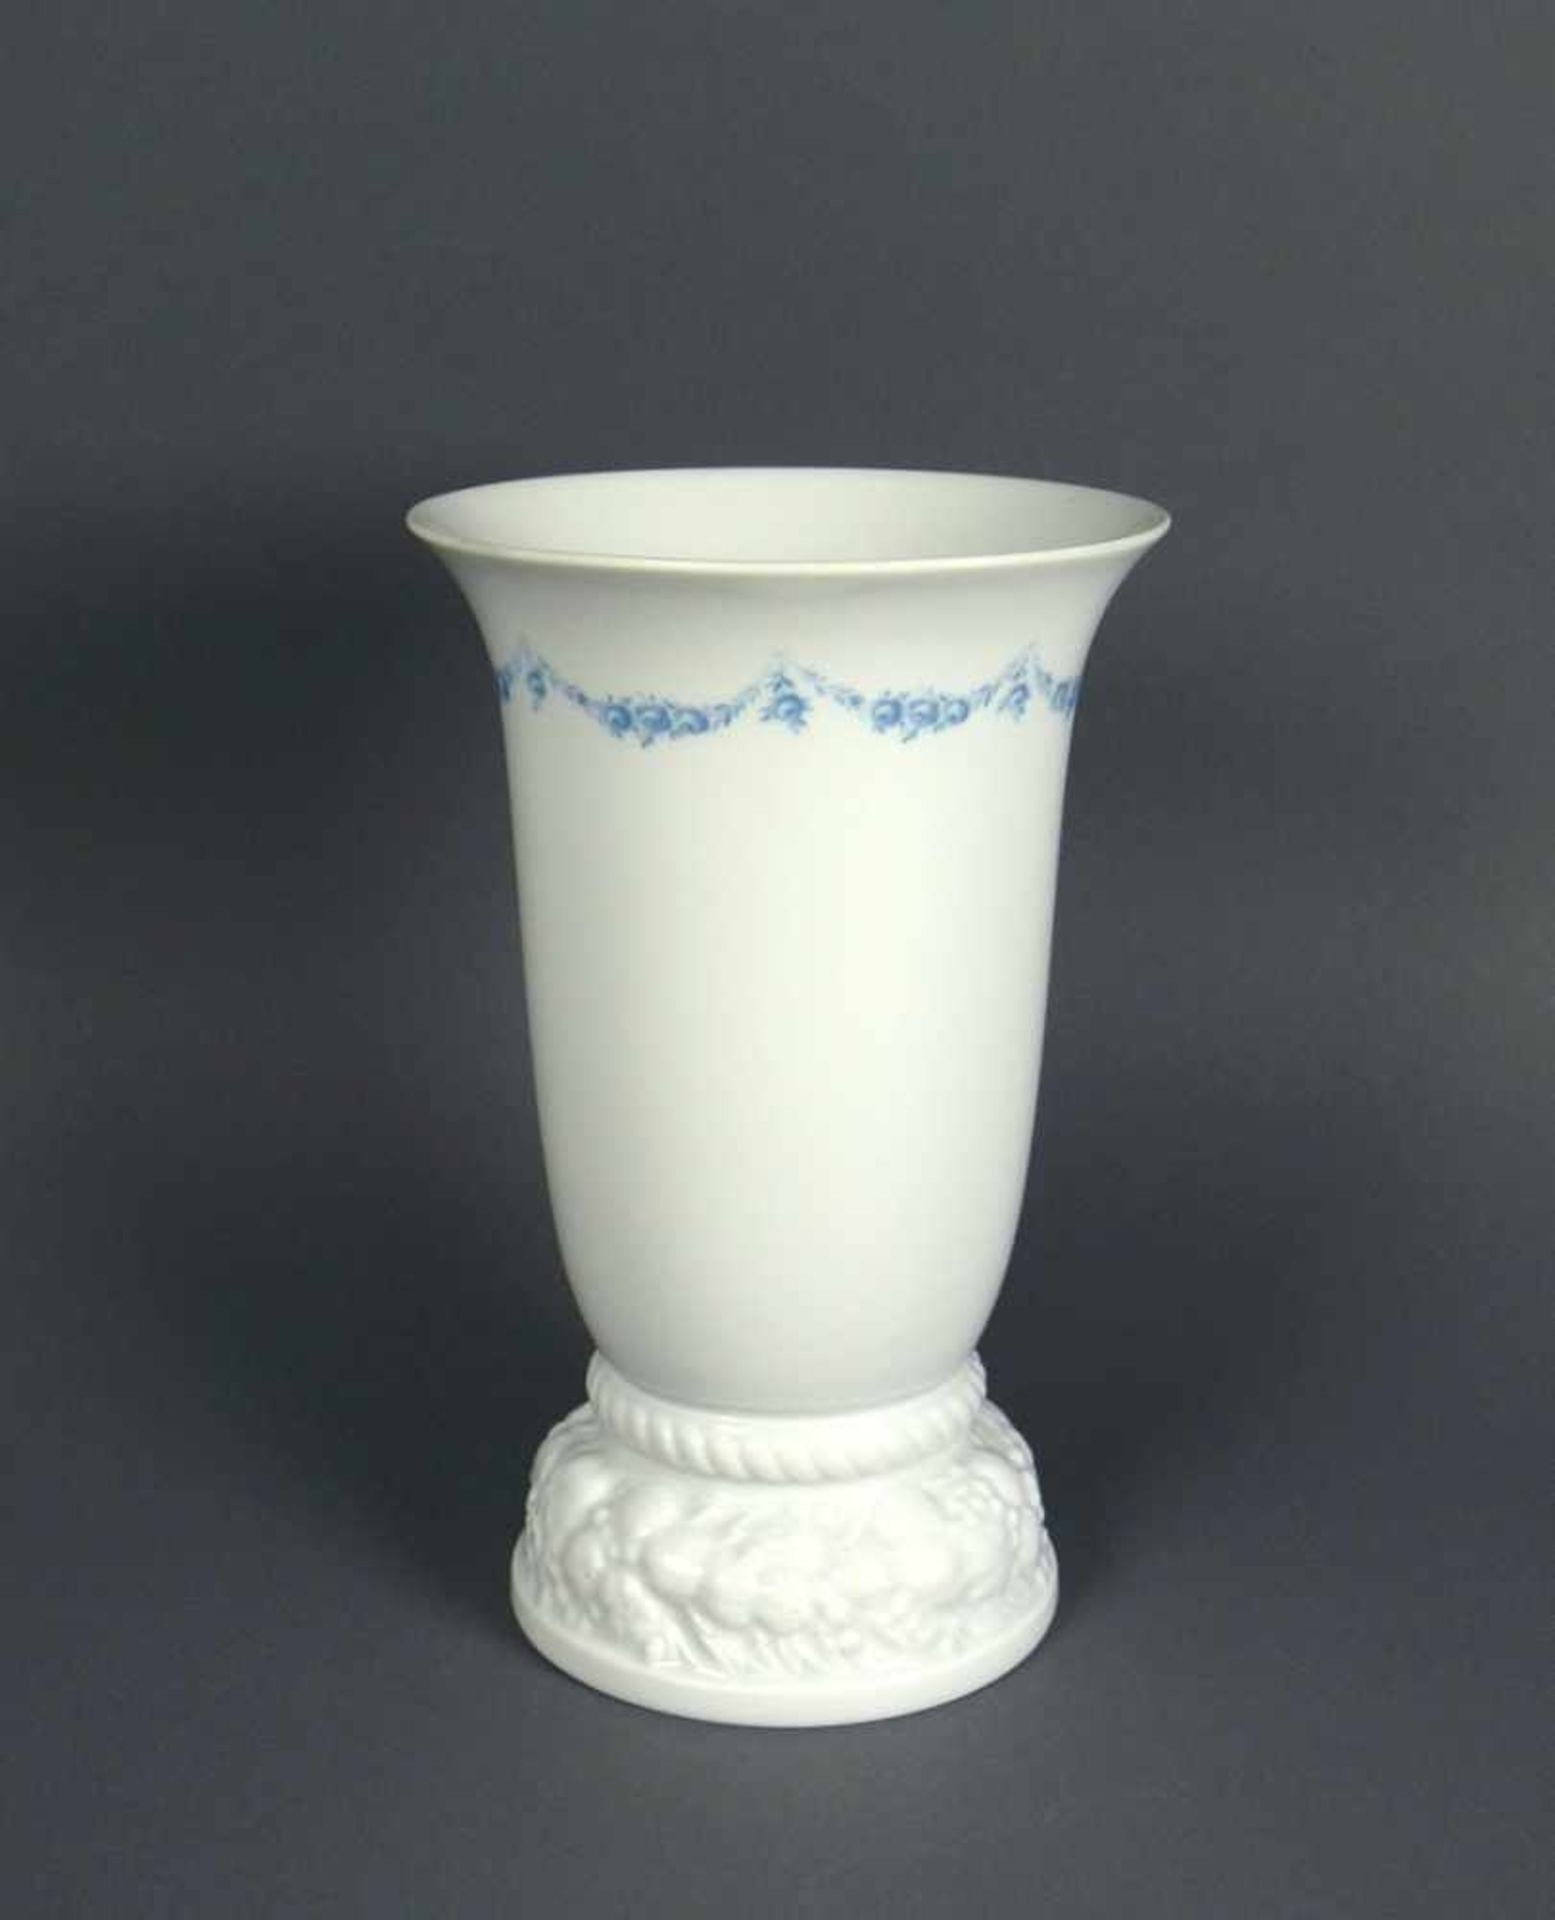 Vase (Rosenthal) Stand mit Rosenrelief; unterhalb des Vasenrandes umlaufender Girlandendekor in